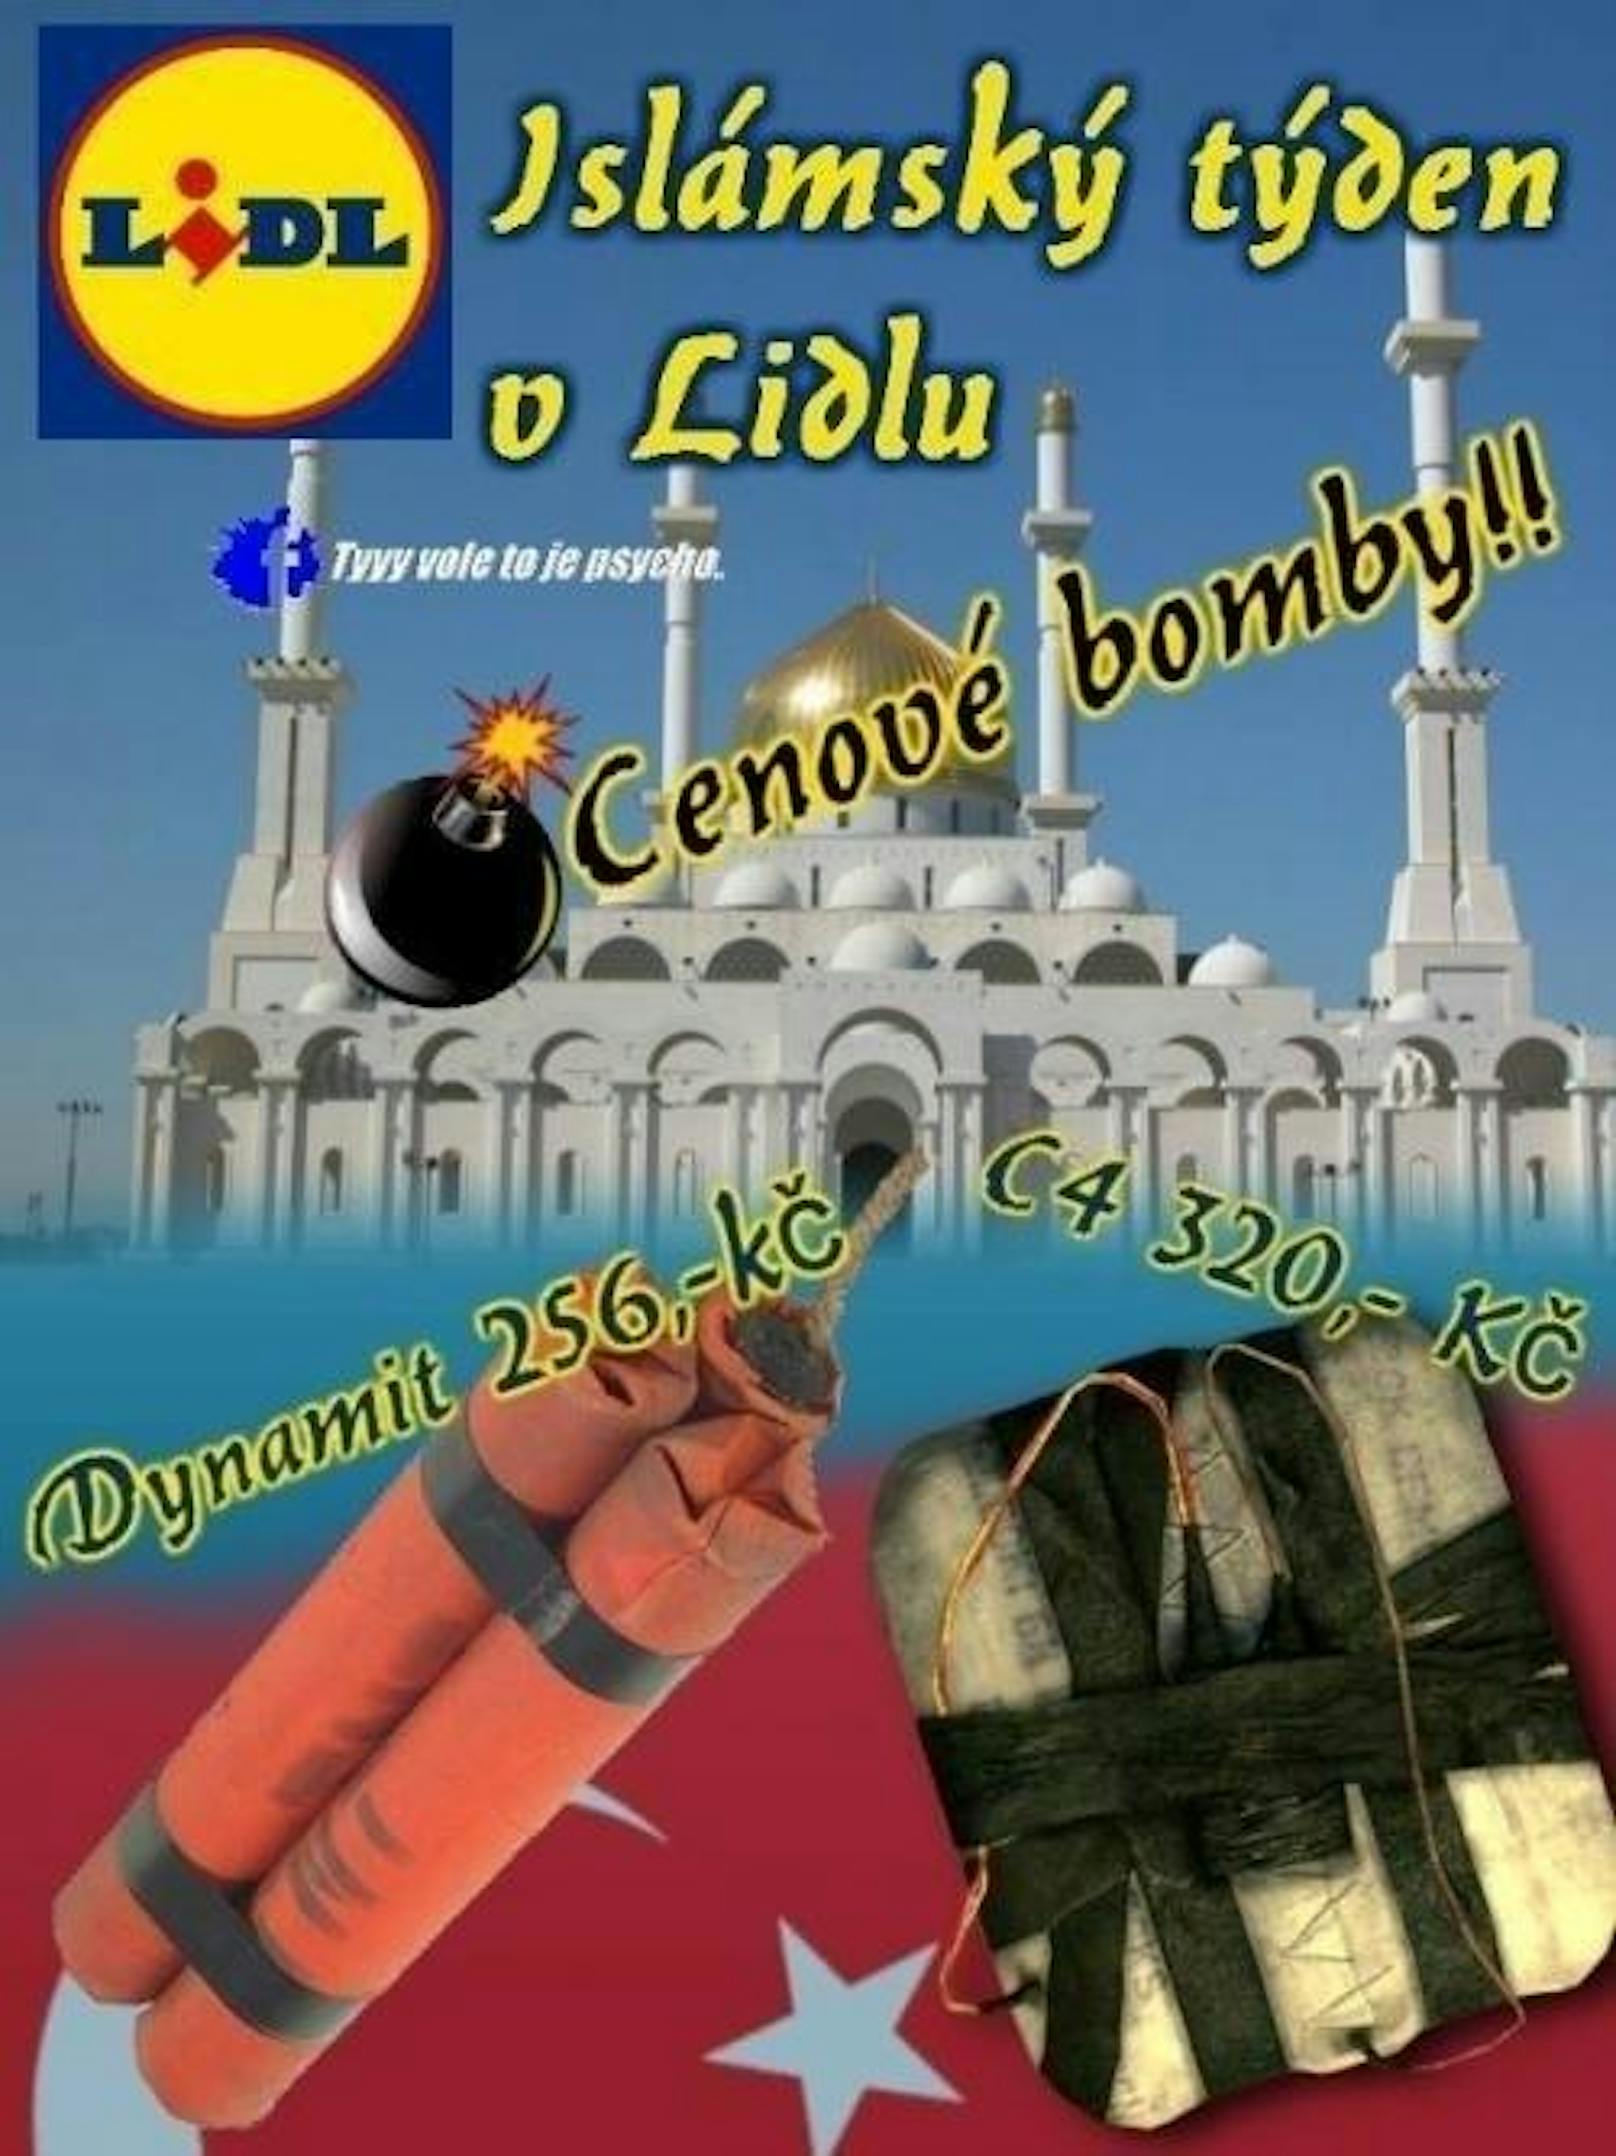 Auf einem gefälschten Plaket wird mit Sprengstoff für die "Islamischen Wochen bei Lidl" geworben.